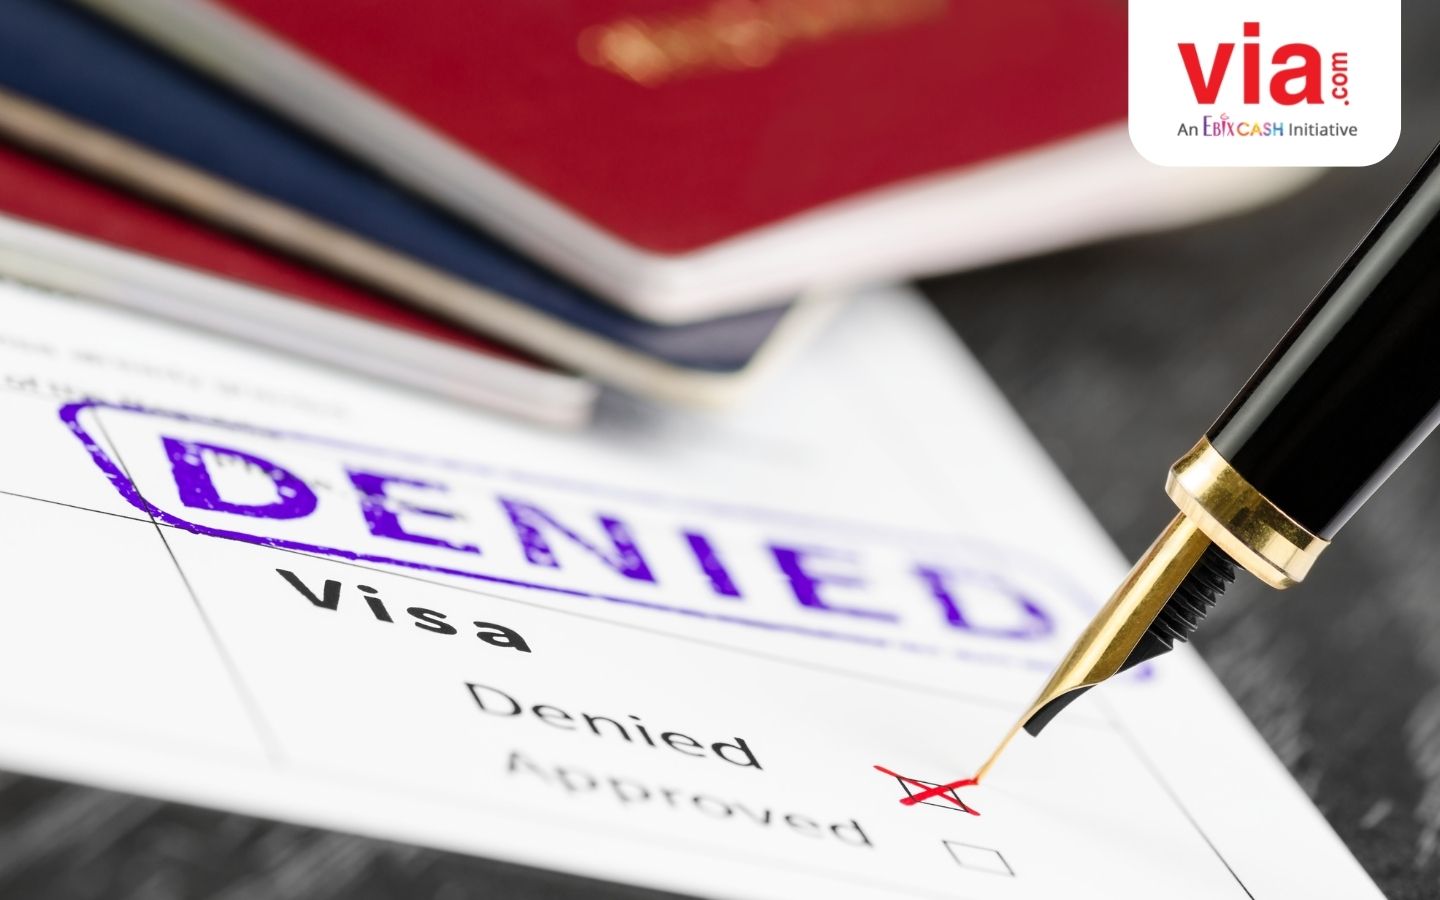 3 Hal yang Harus Dilakukan saat Visa Ditolak